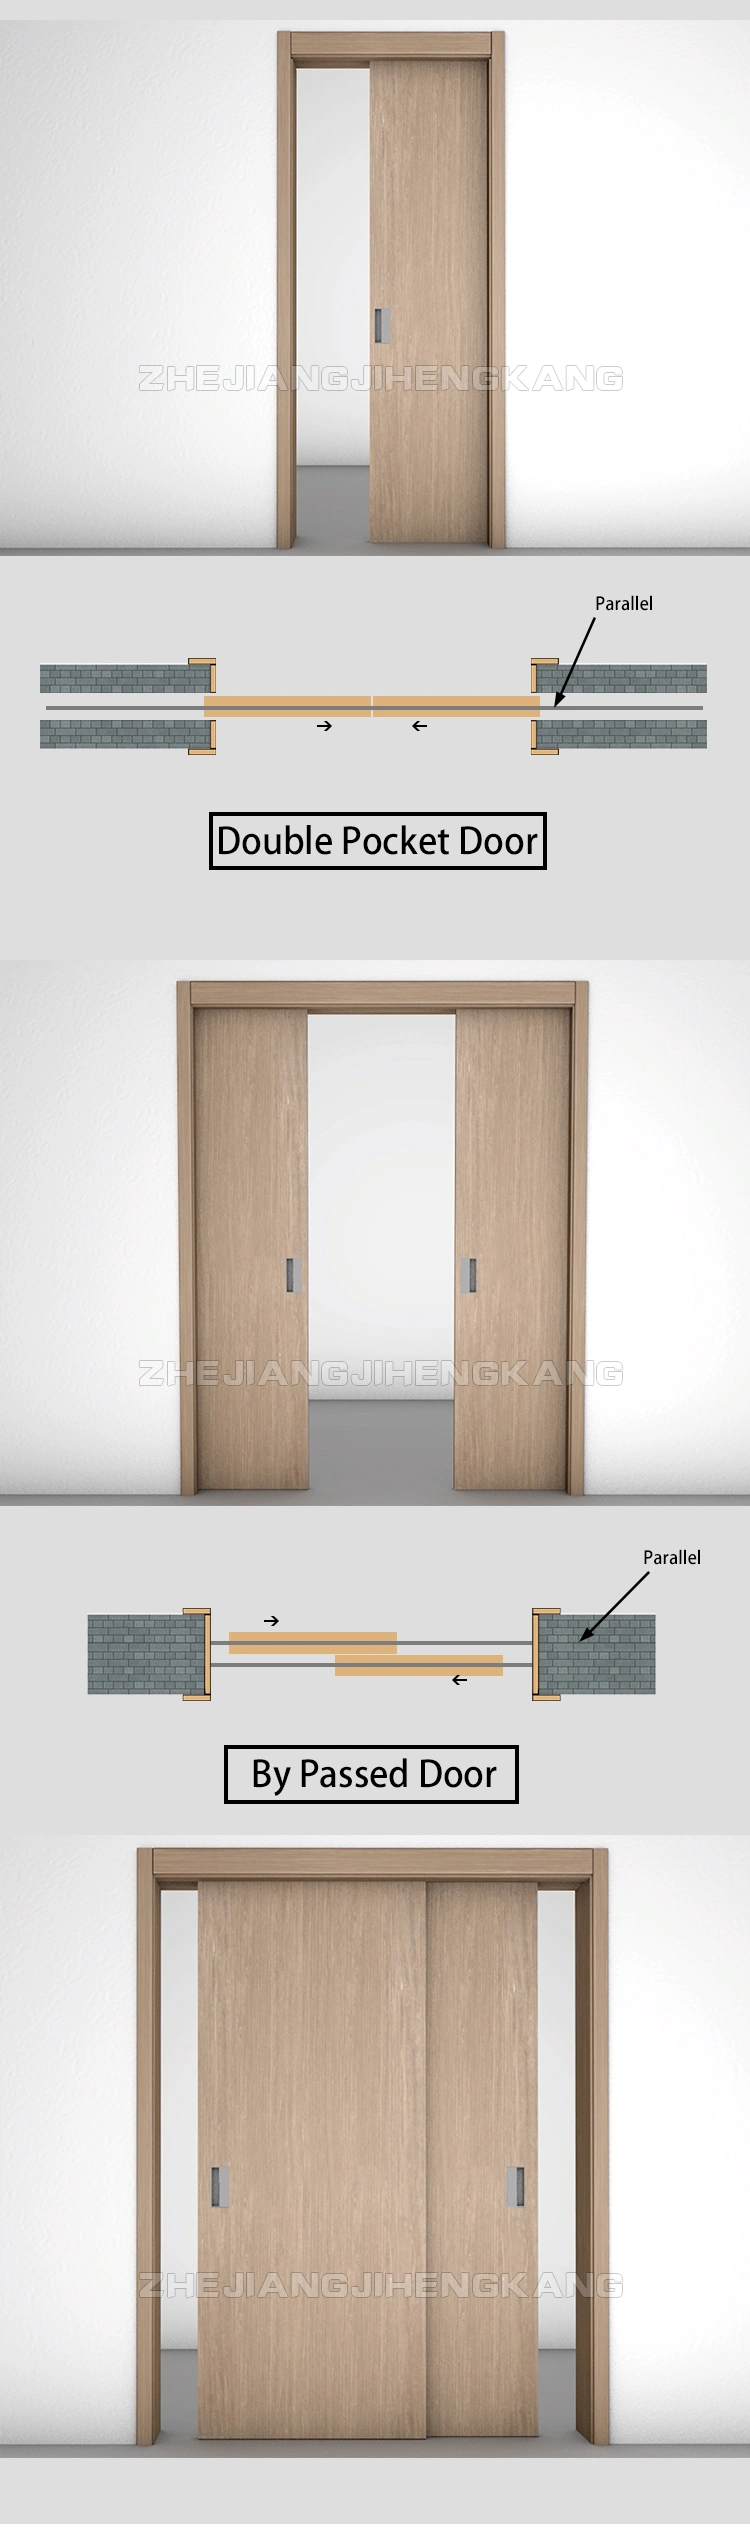 Sliding Panels Room Divider Sliding Door Designs Arch Sliding Door